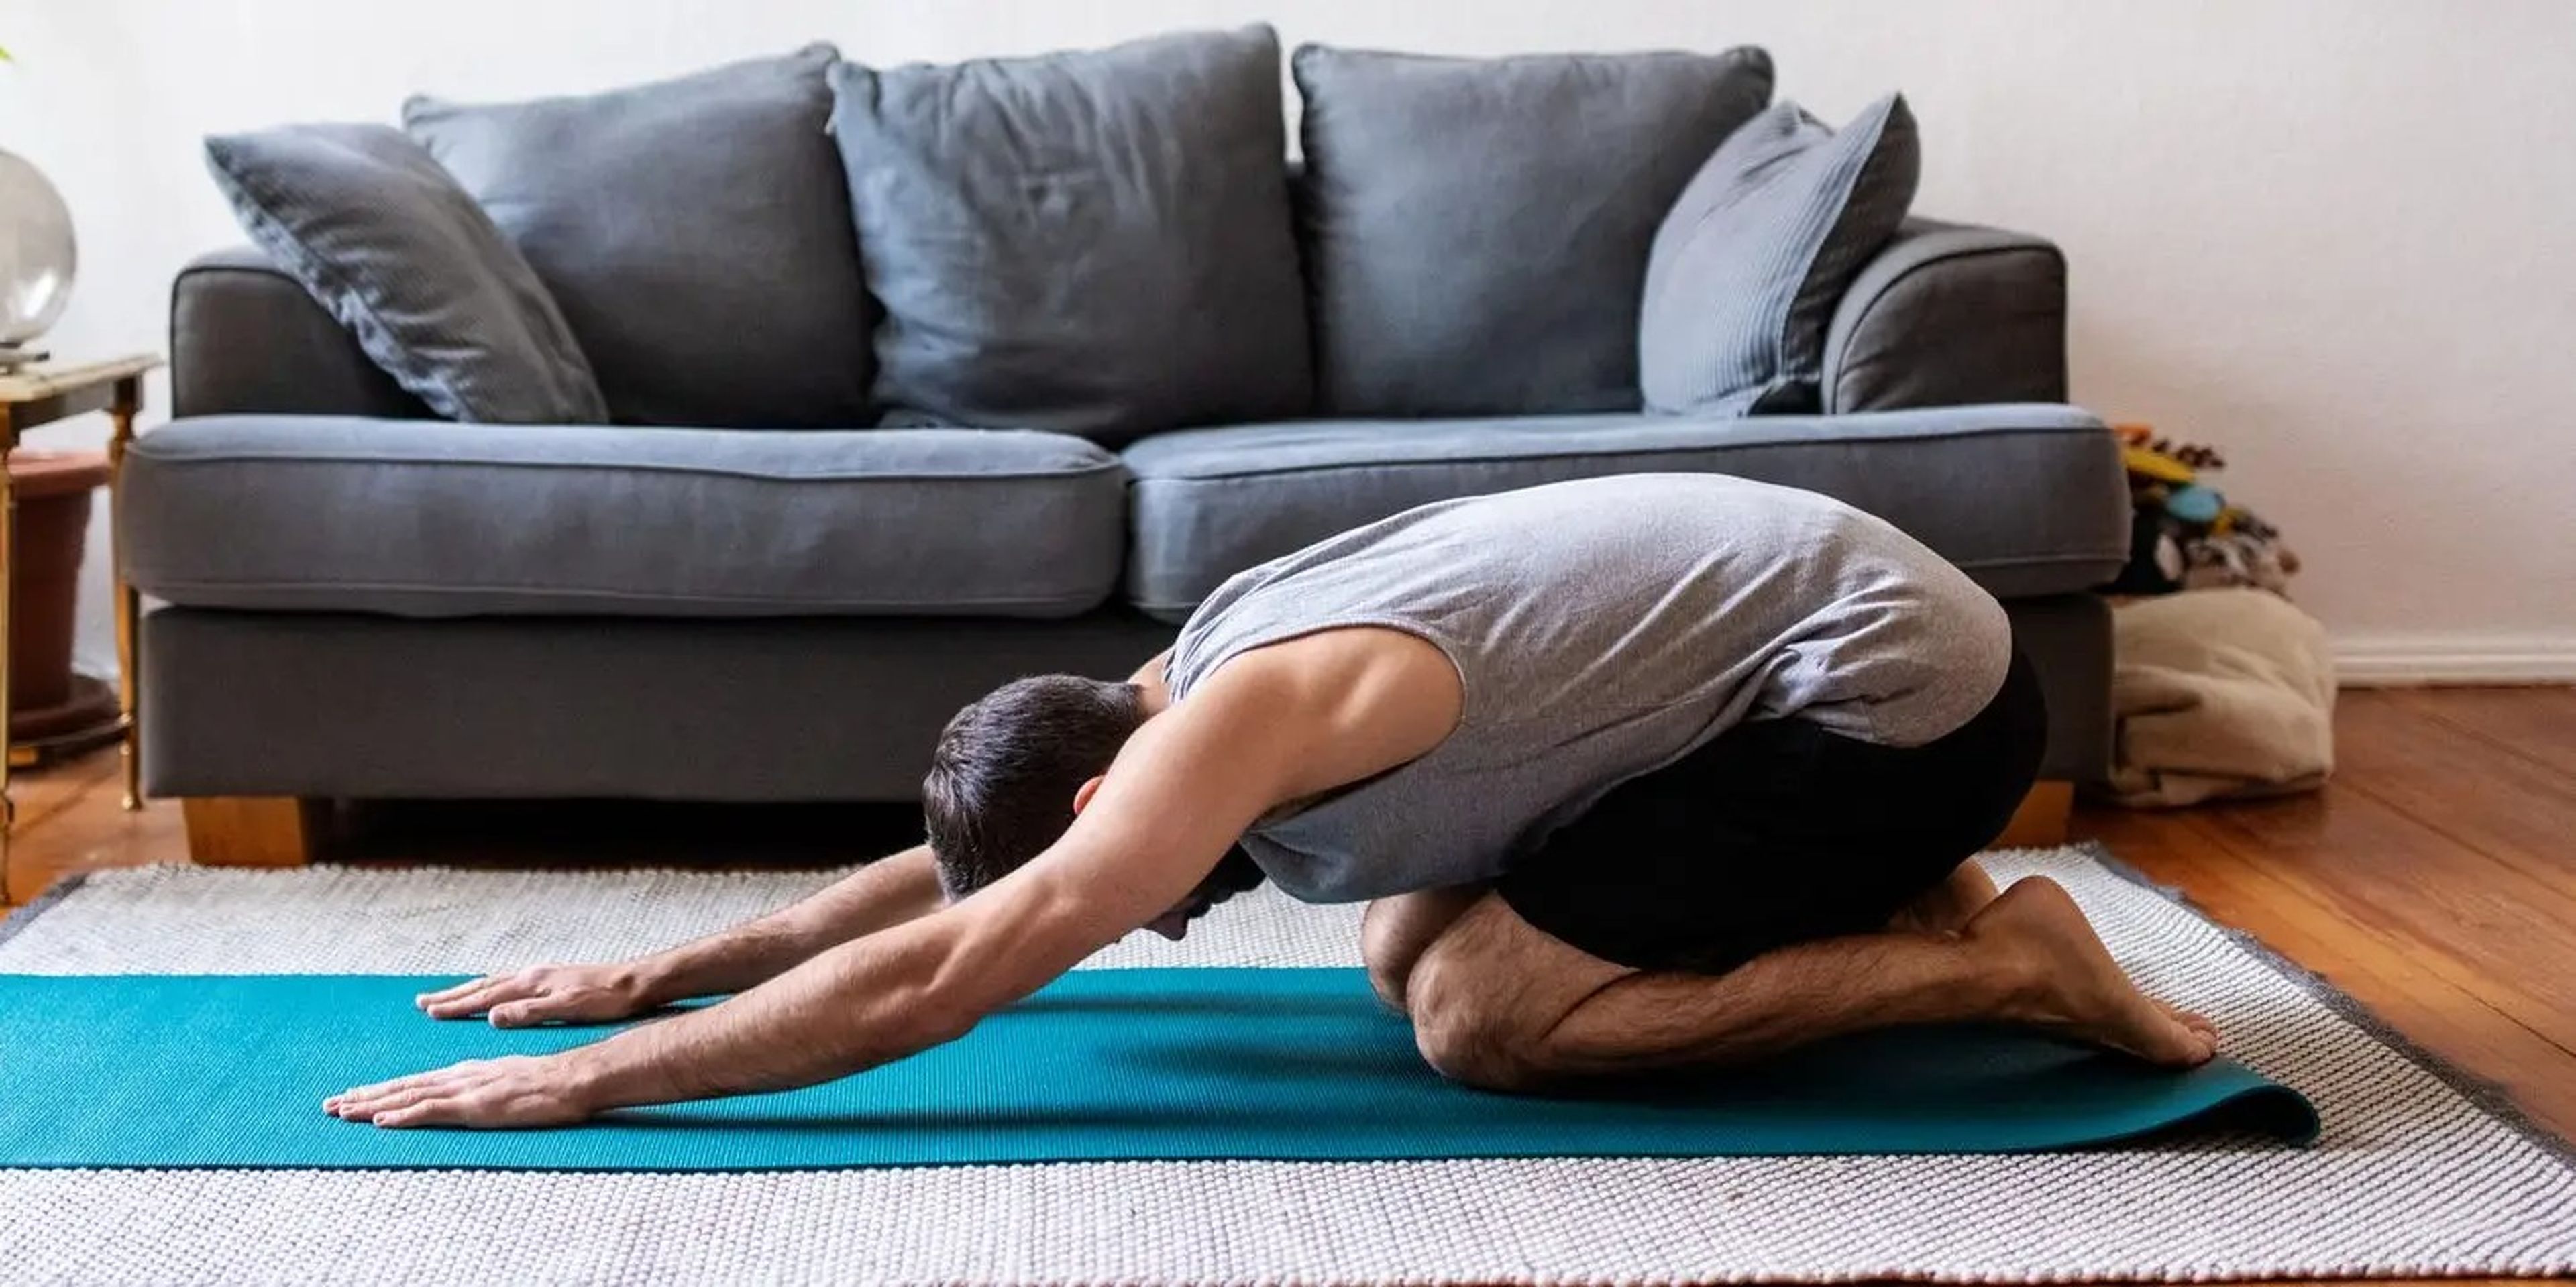 Las asanas de yoga, como la postura del niño, pueden ayudar con los síntomas del síndrome del intestino irritable (SII) y los gases.